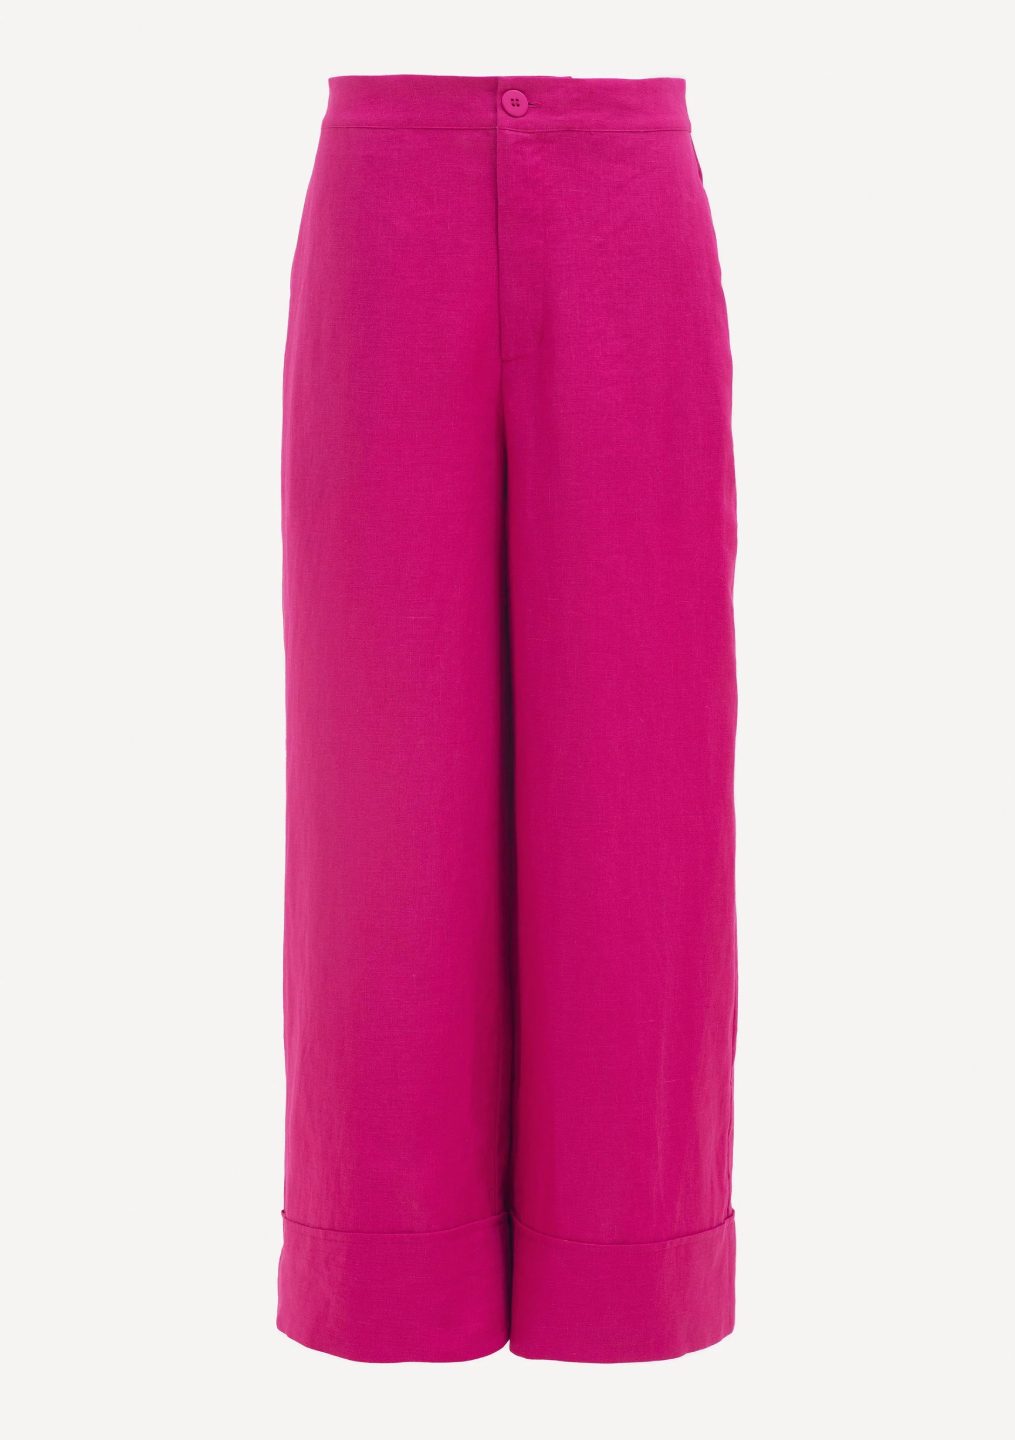 Elk | Anneli Light Linen Pant - Bright Pink - Contain Boutique